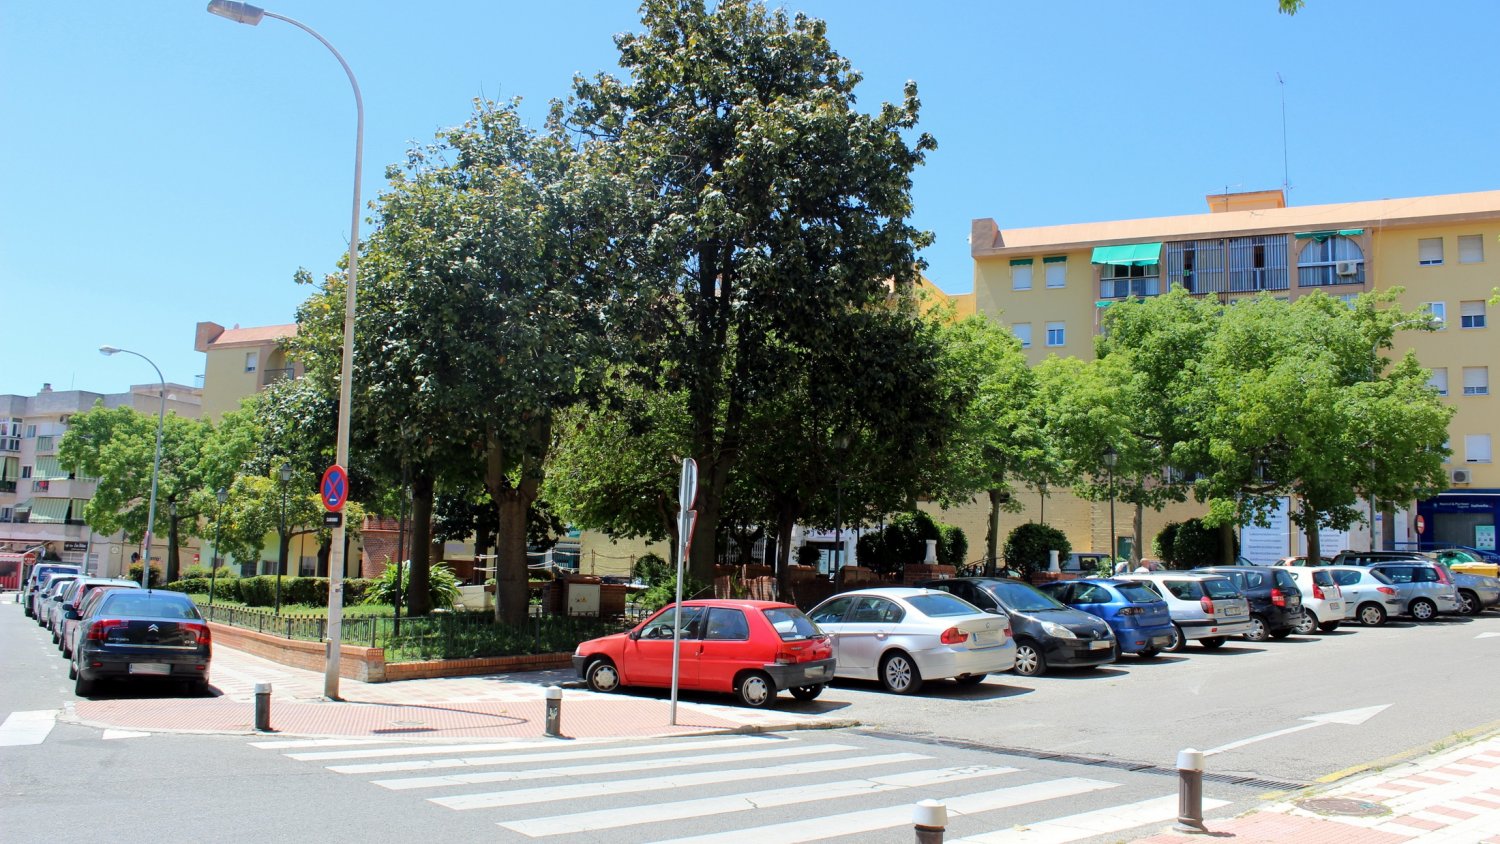 Estepona adjudica las obras del segundo aparcamiento público que creará más de 500 plazas en el centro